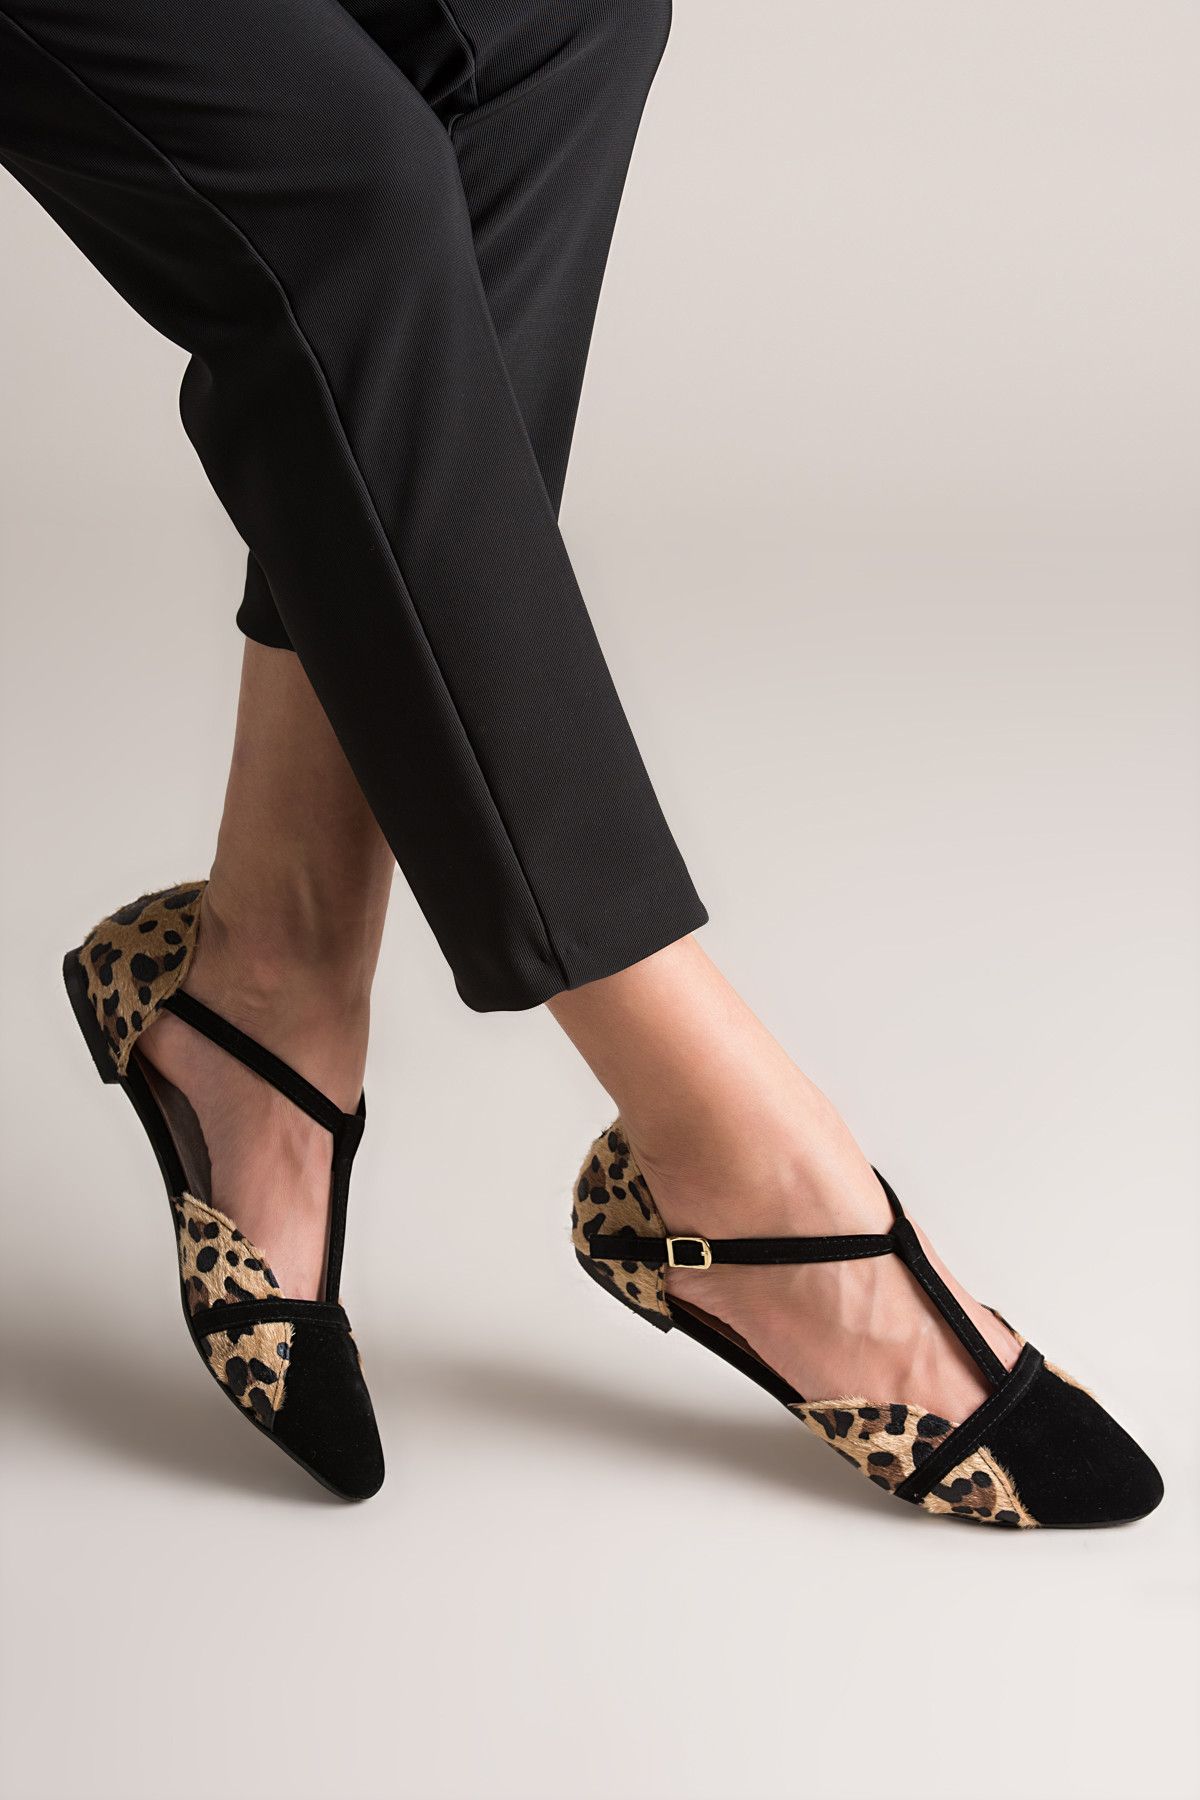 Fox Shoes Leopar Siyah Kadın Ayakkabı B726881802